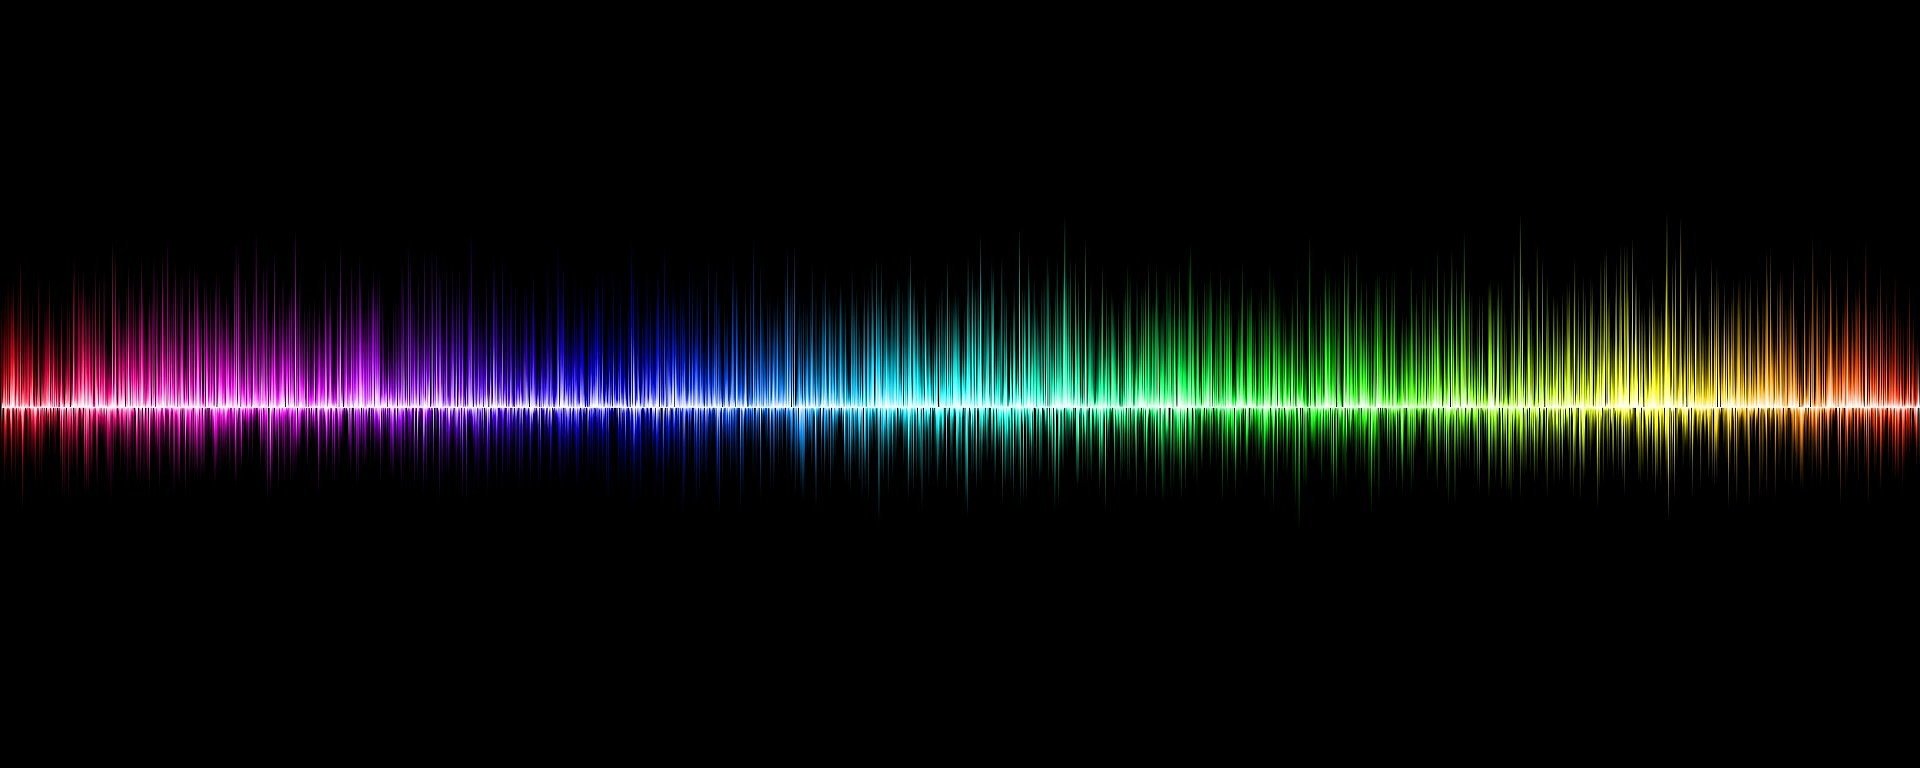 Han aparecido nuevas pruebas de que el sonido de todos modos transfiere la masa